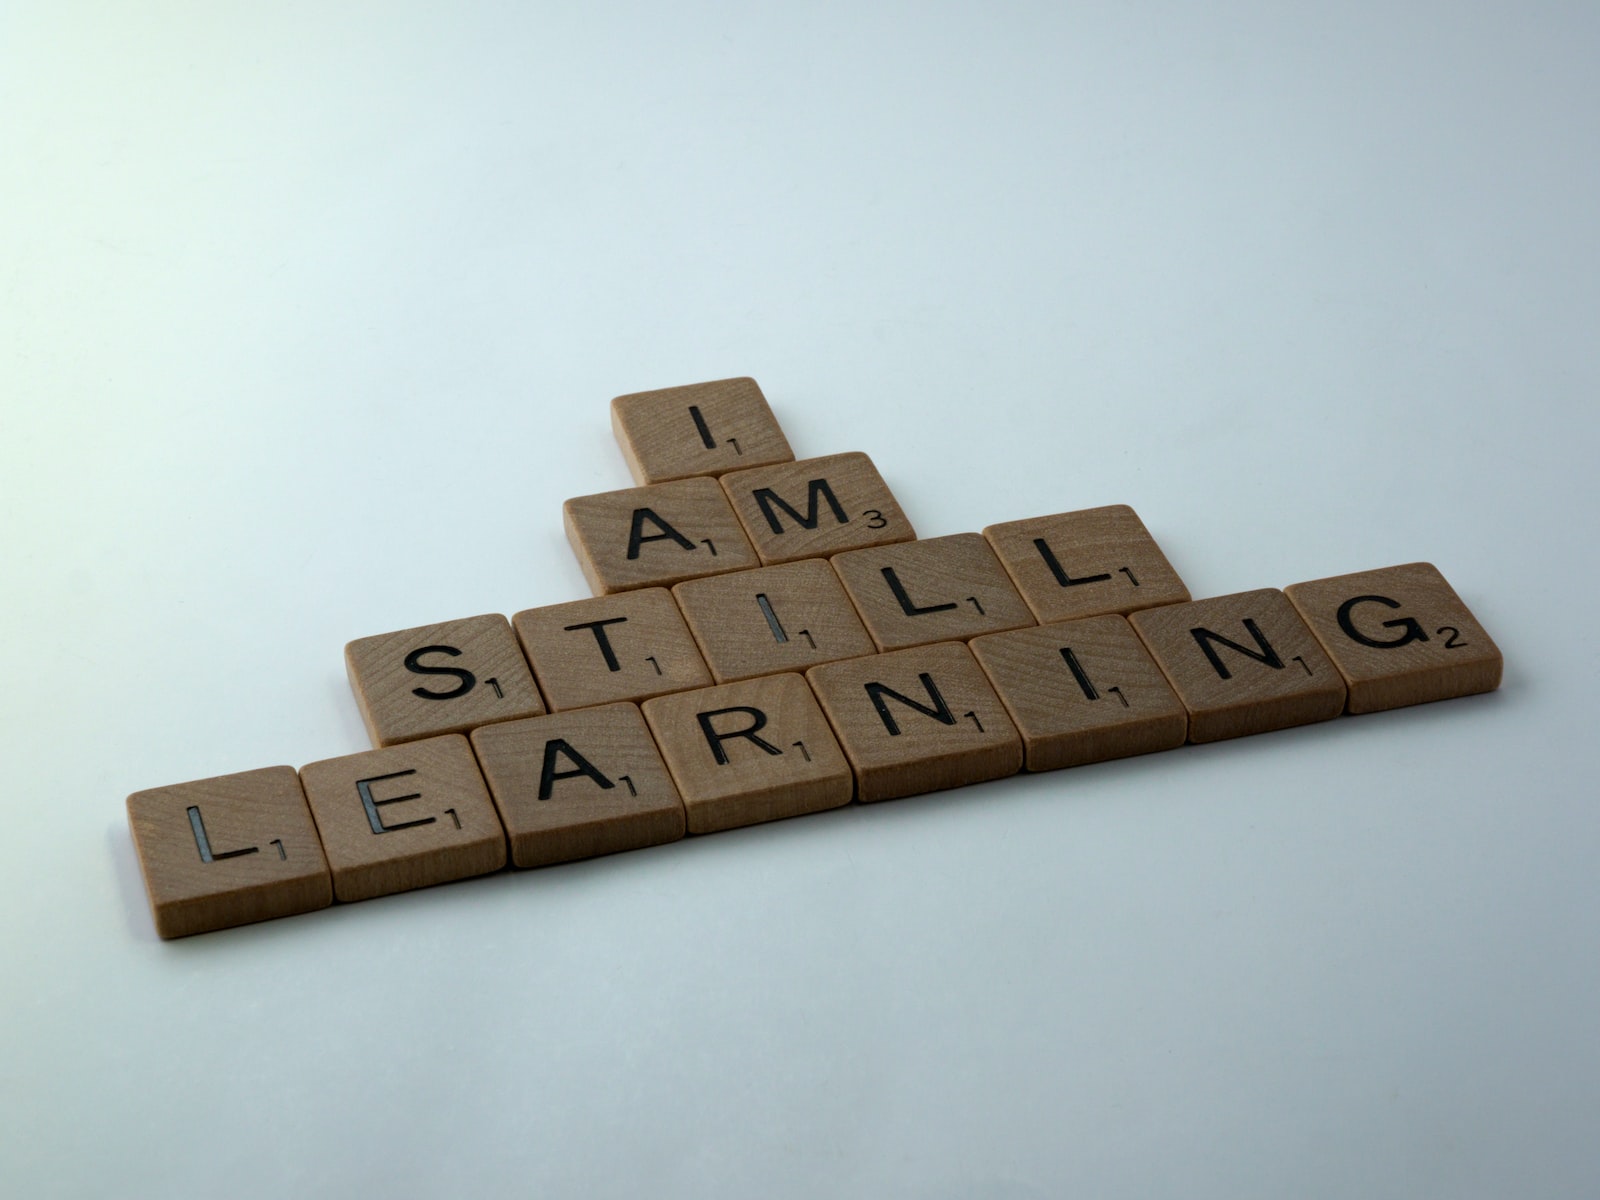 Comment mieux apprendre, retenir et appliquer au quotidien grâce au blended learning ?